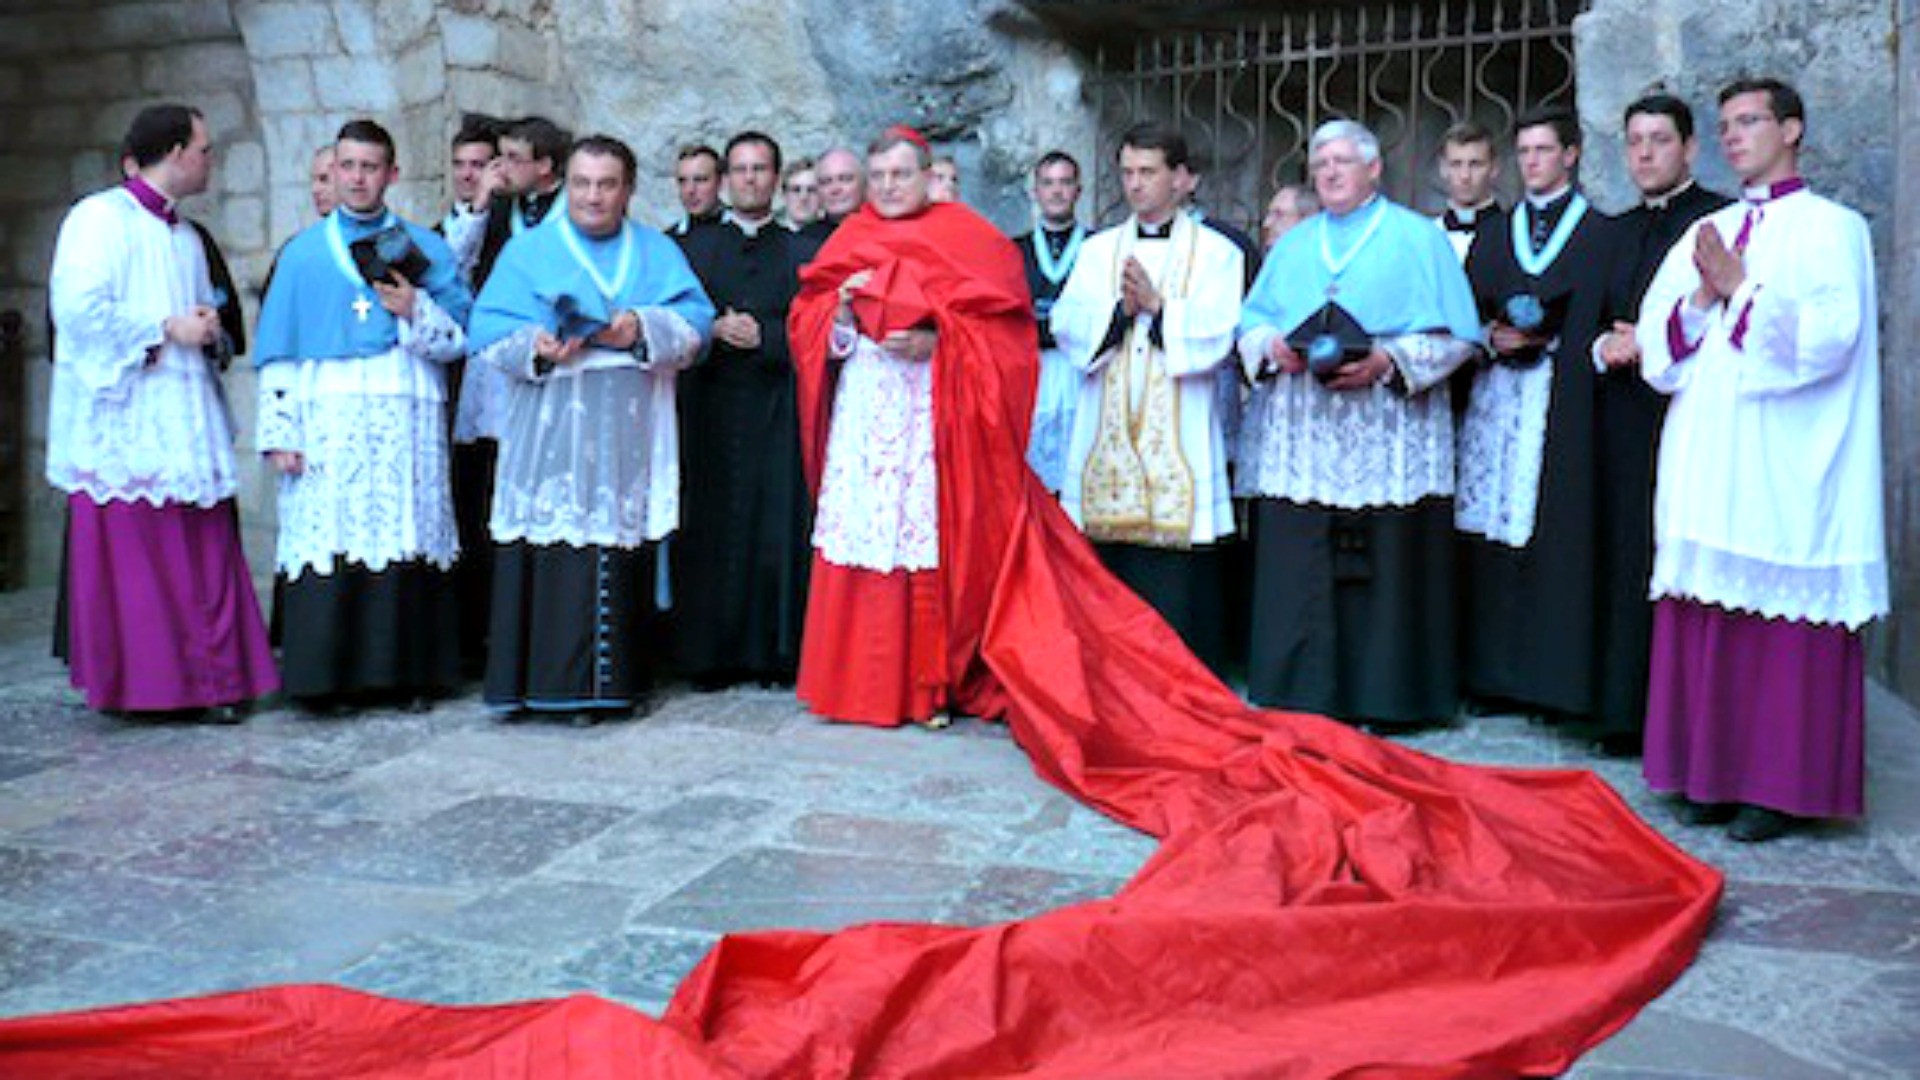 Le cardinal Burke à Rocamadour (Photo: www.riposte-catholique.fr)